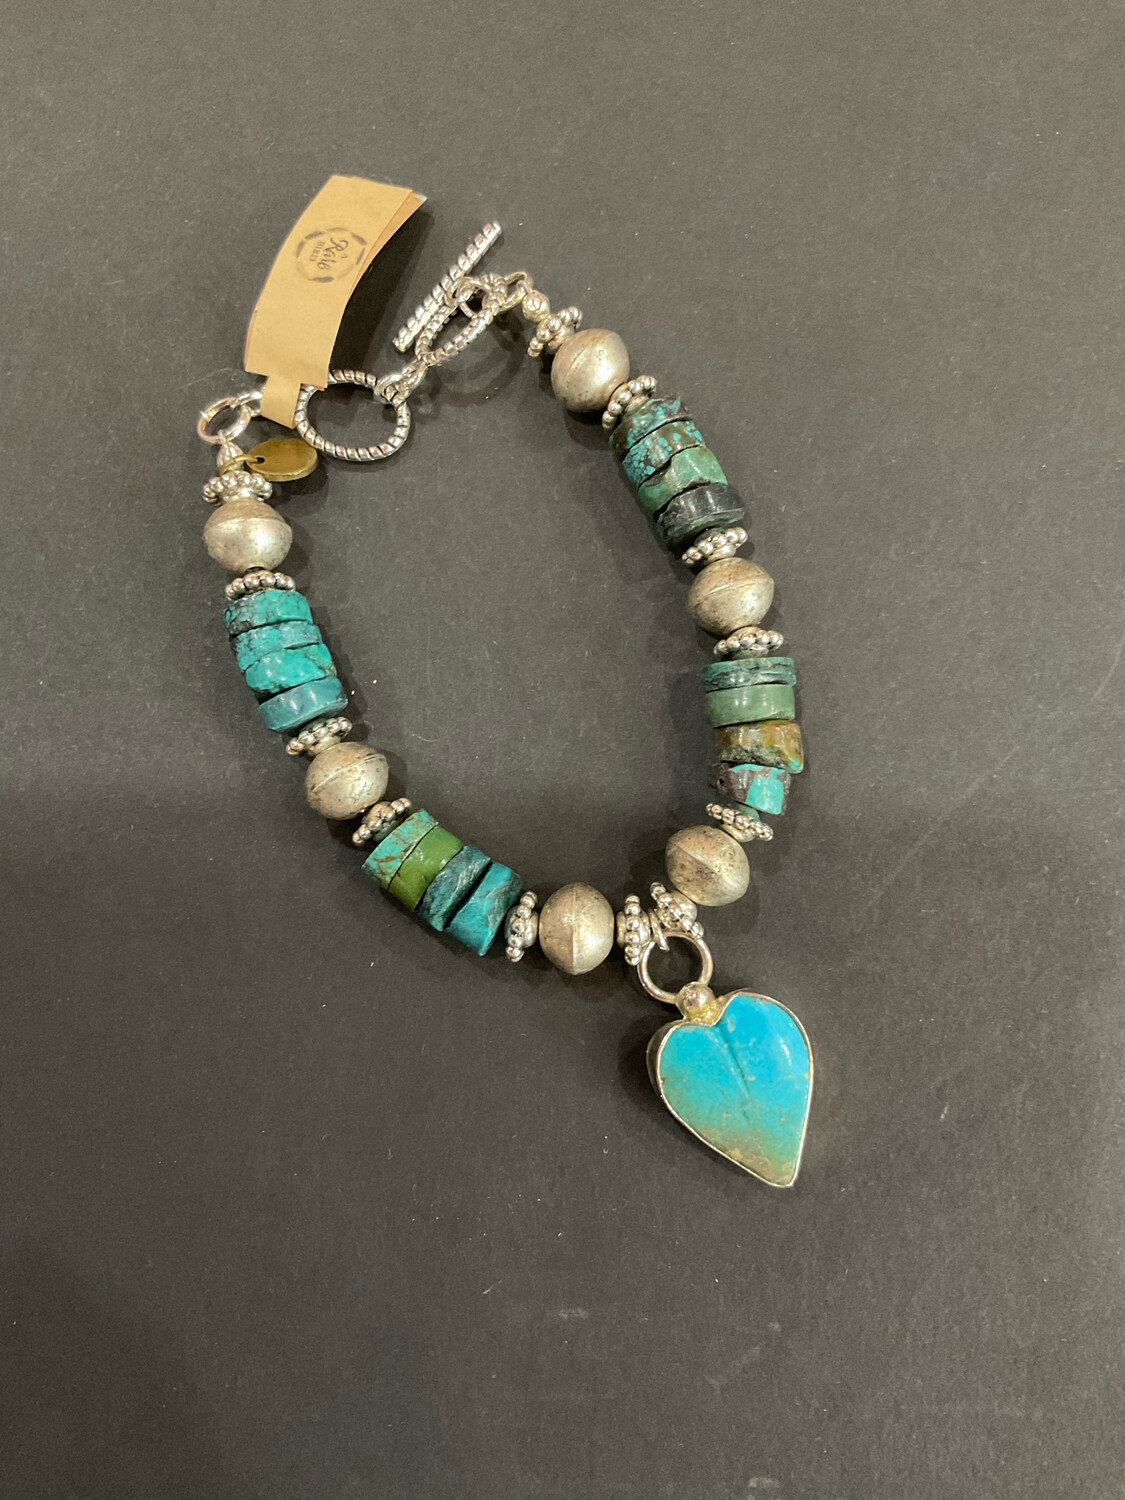 A Rare Bird Bracelet Heart Pendant W/Turq Bead & Asst Stones 